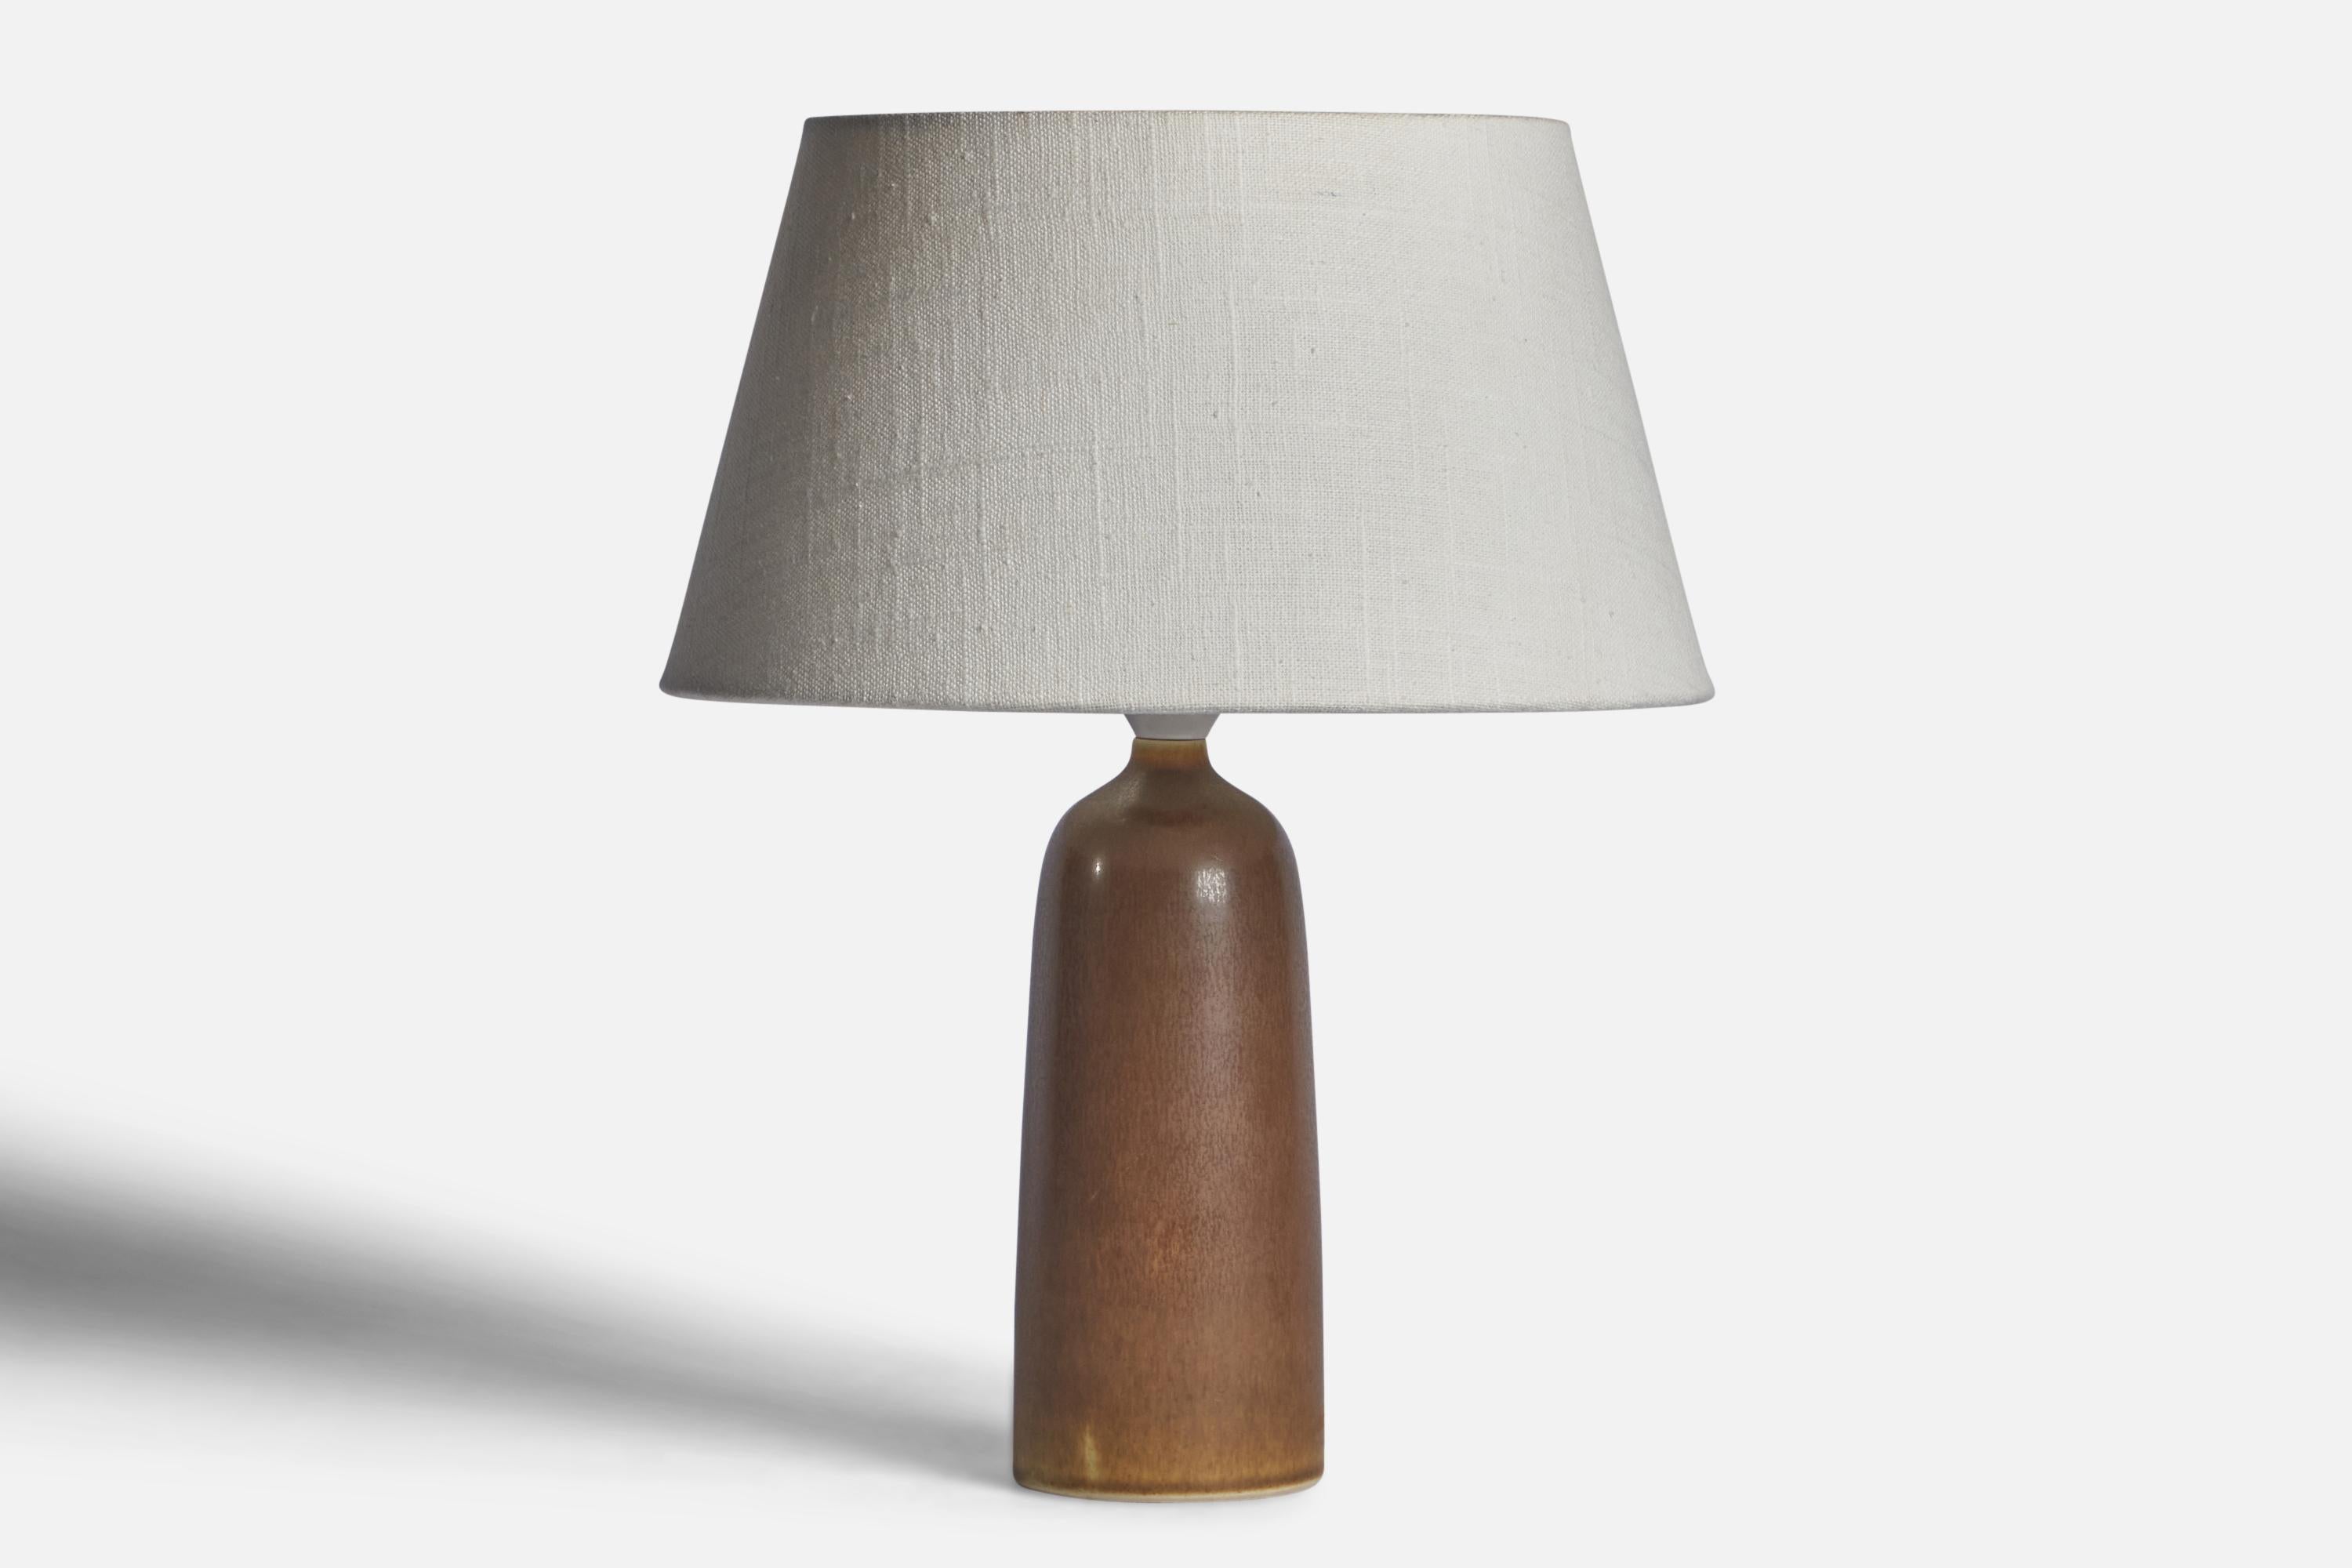 Lampe de table en grès émaillé brun, conçue par Per & Annelise Linneman-Schmidt et produite par Palshus, Danemark, années 1960

Dimensions de la lampe (pouces) : 10.25